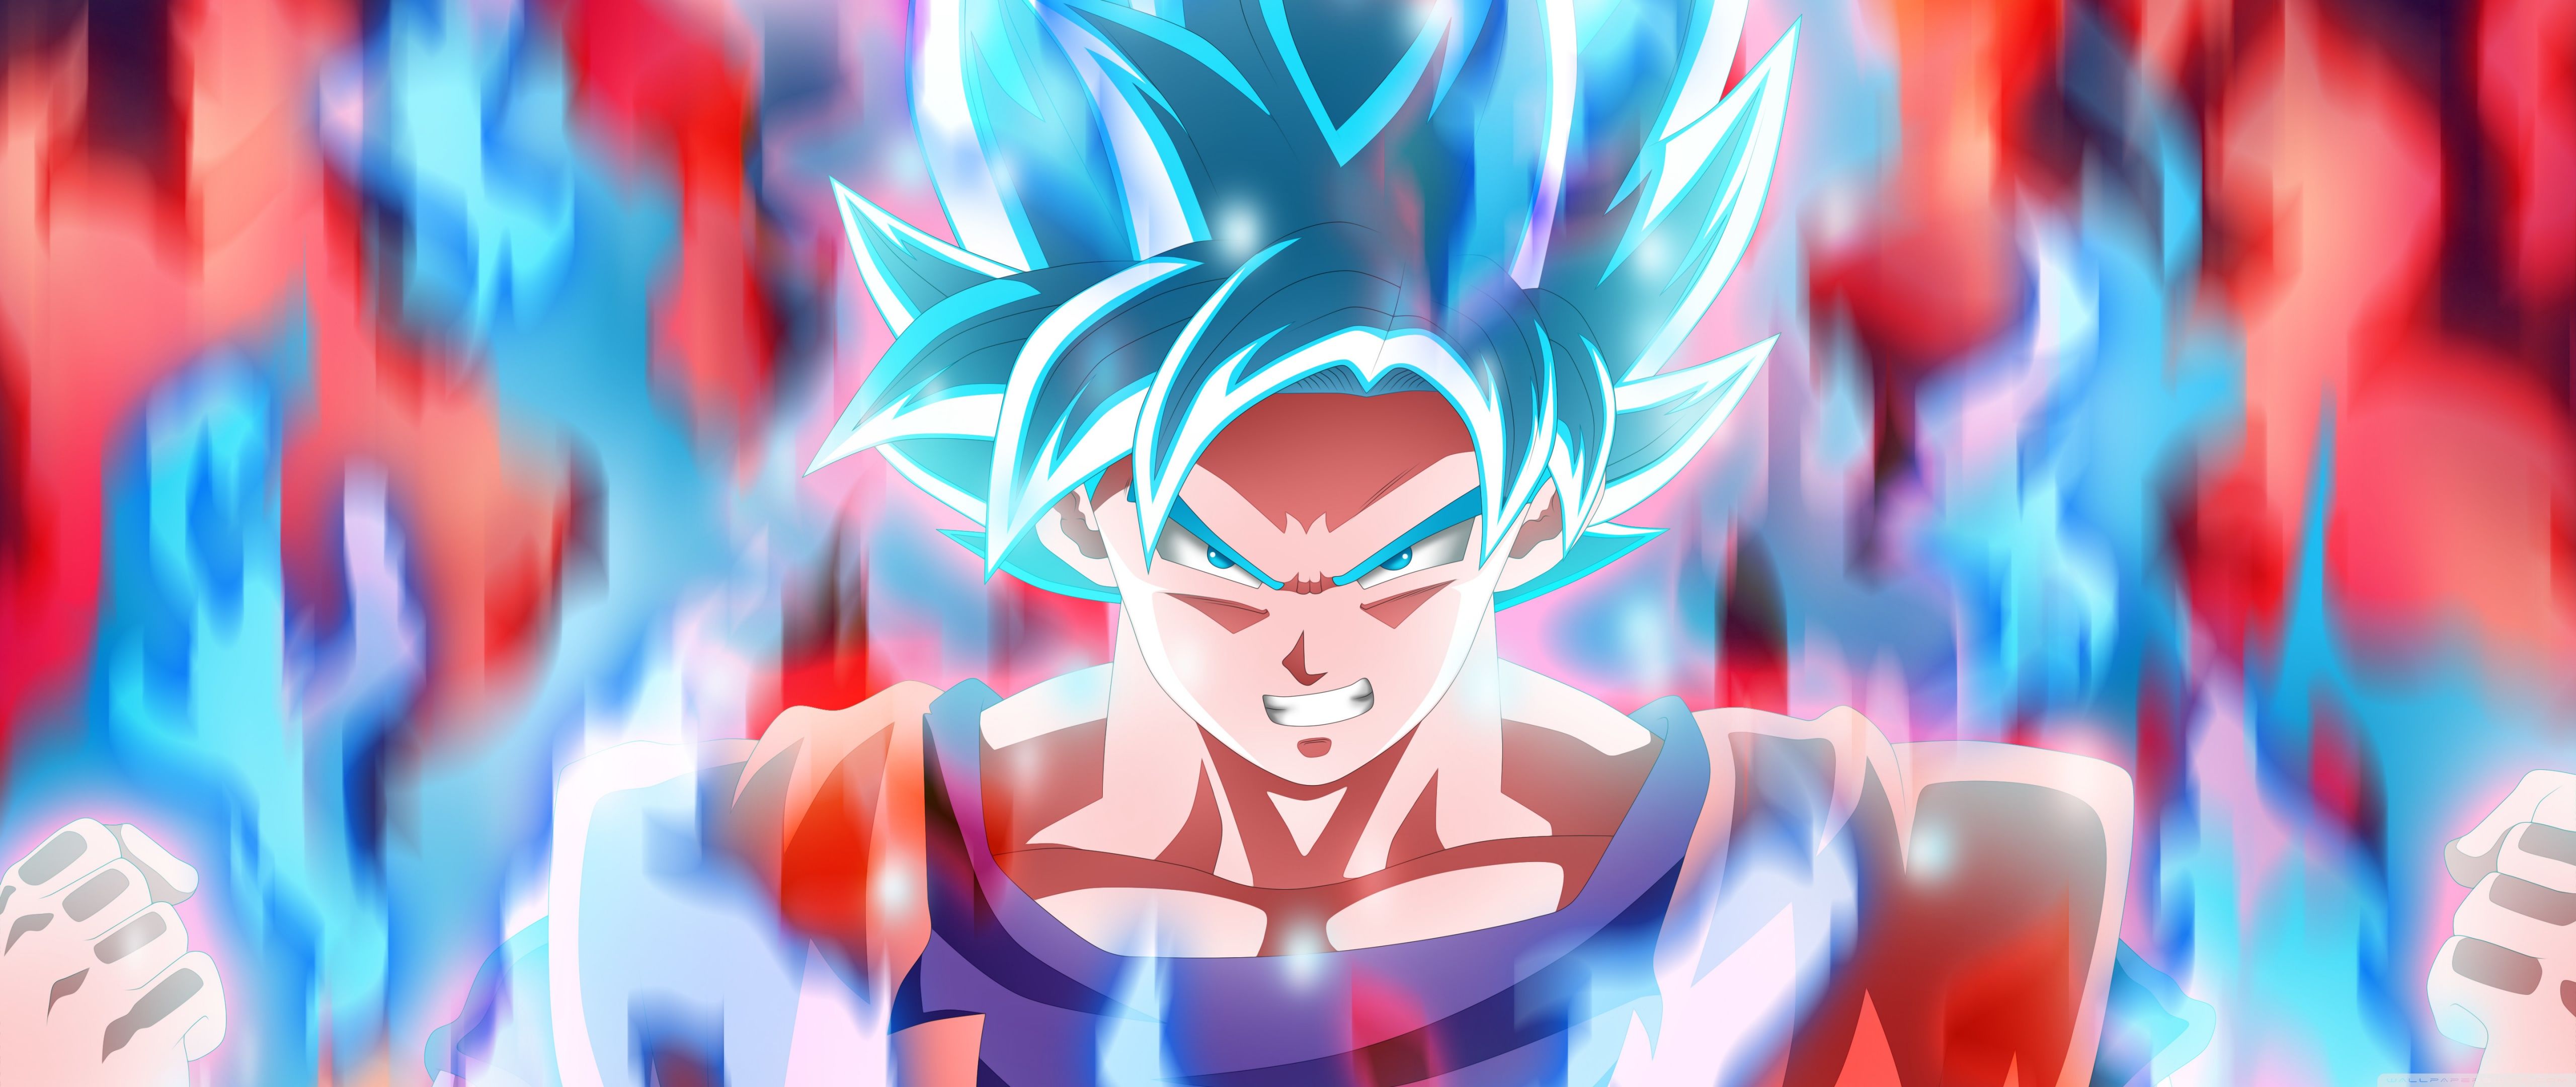 Goku Dragon Ball Super Ultra HD Desktop Background Wallpaper